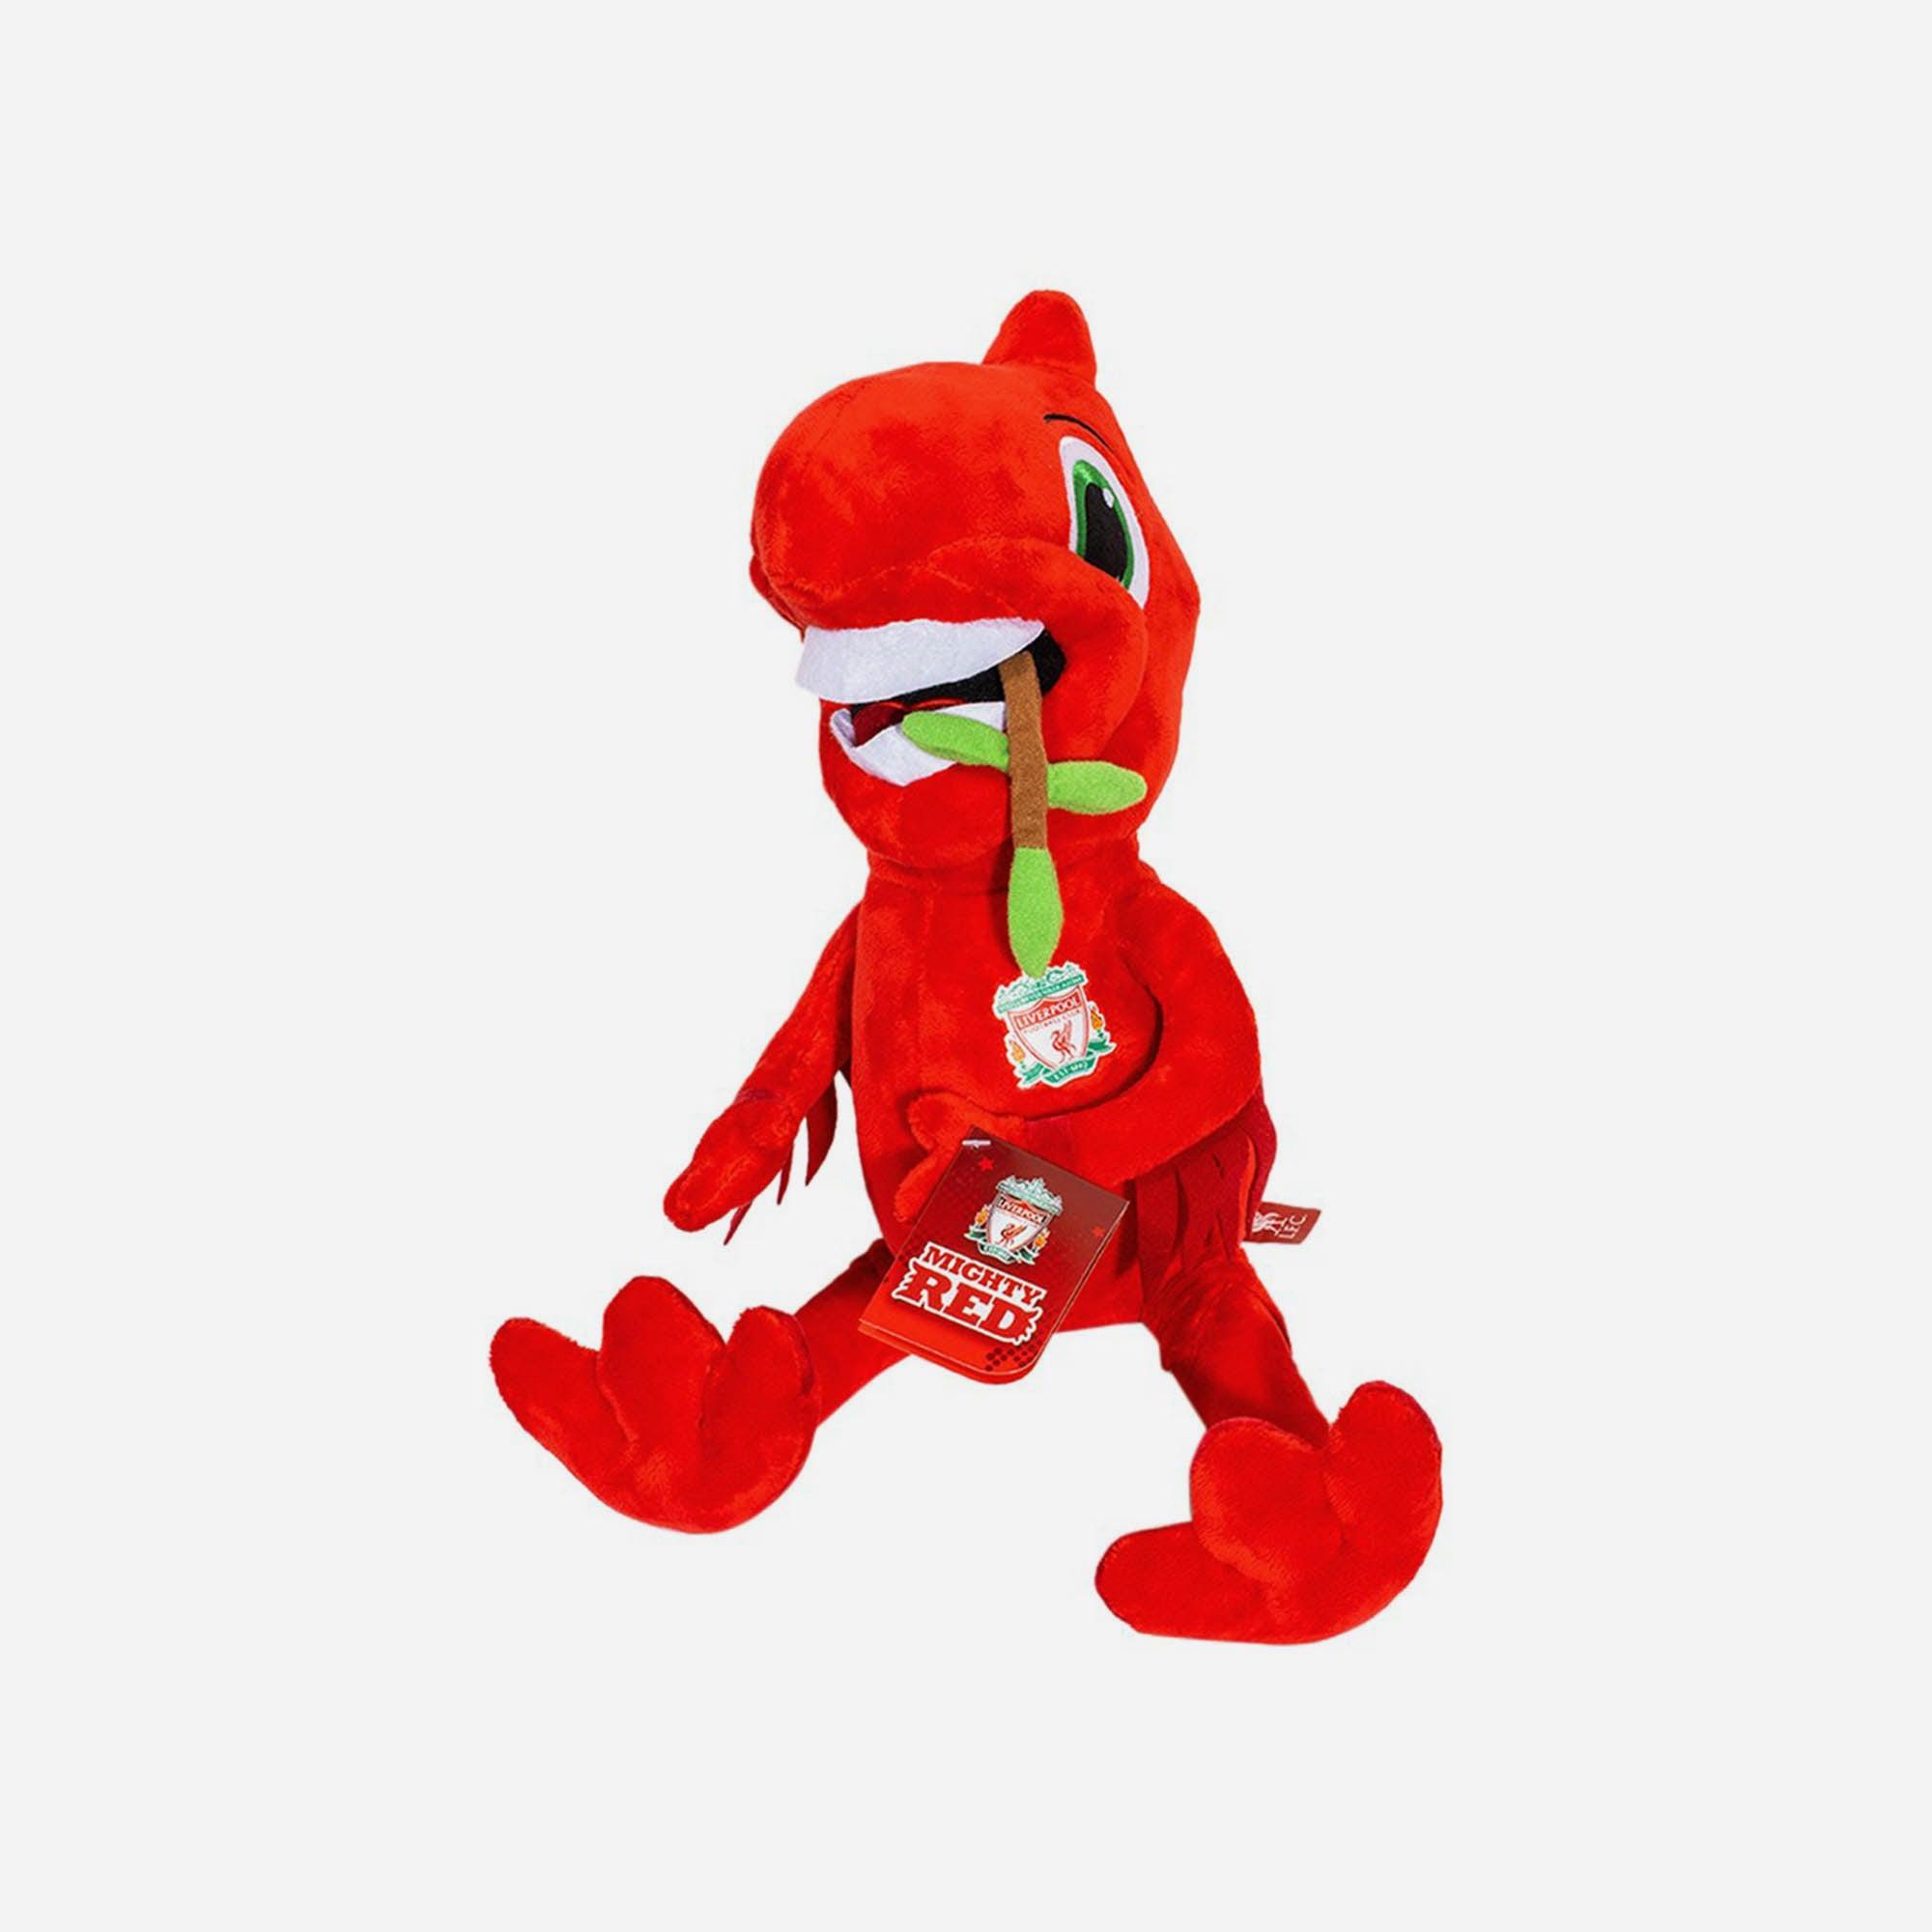 Gấu bông Lfc Plush Mighty Red Toy - A13915